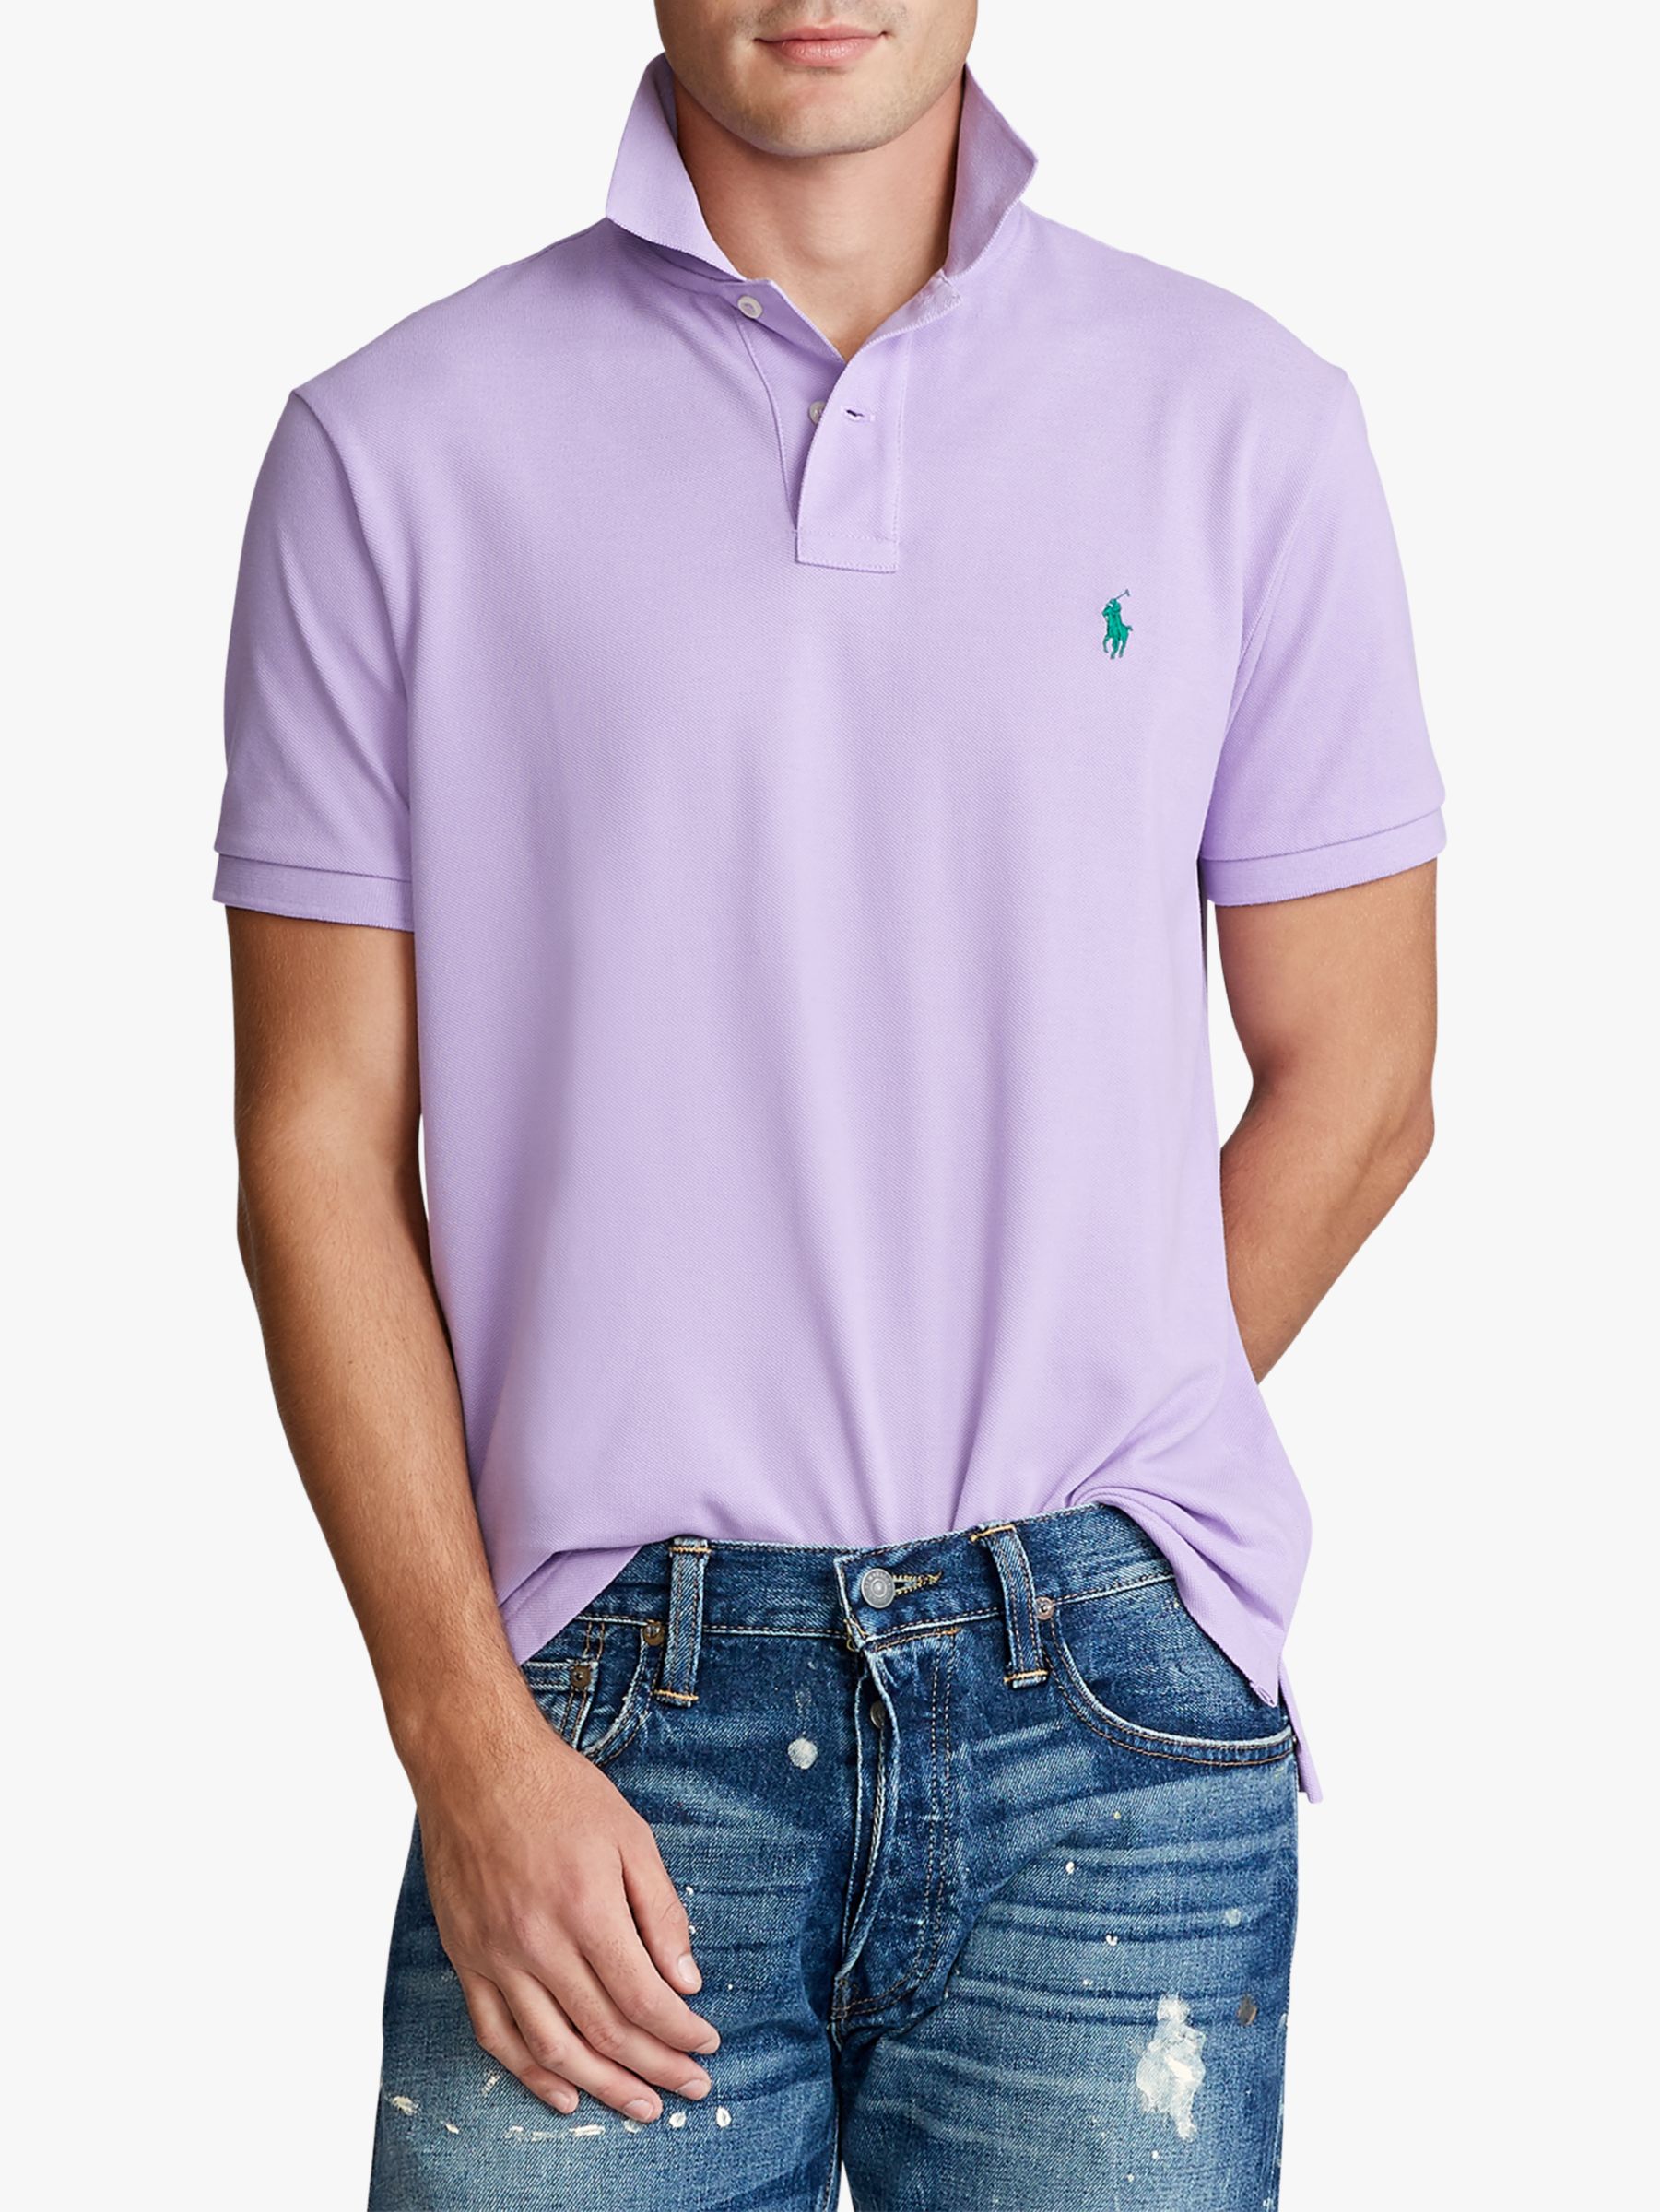 lilac ralph lauren polo shirt